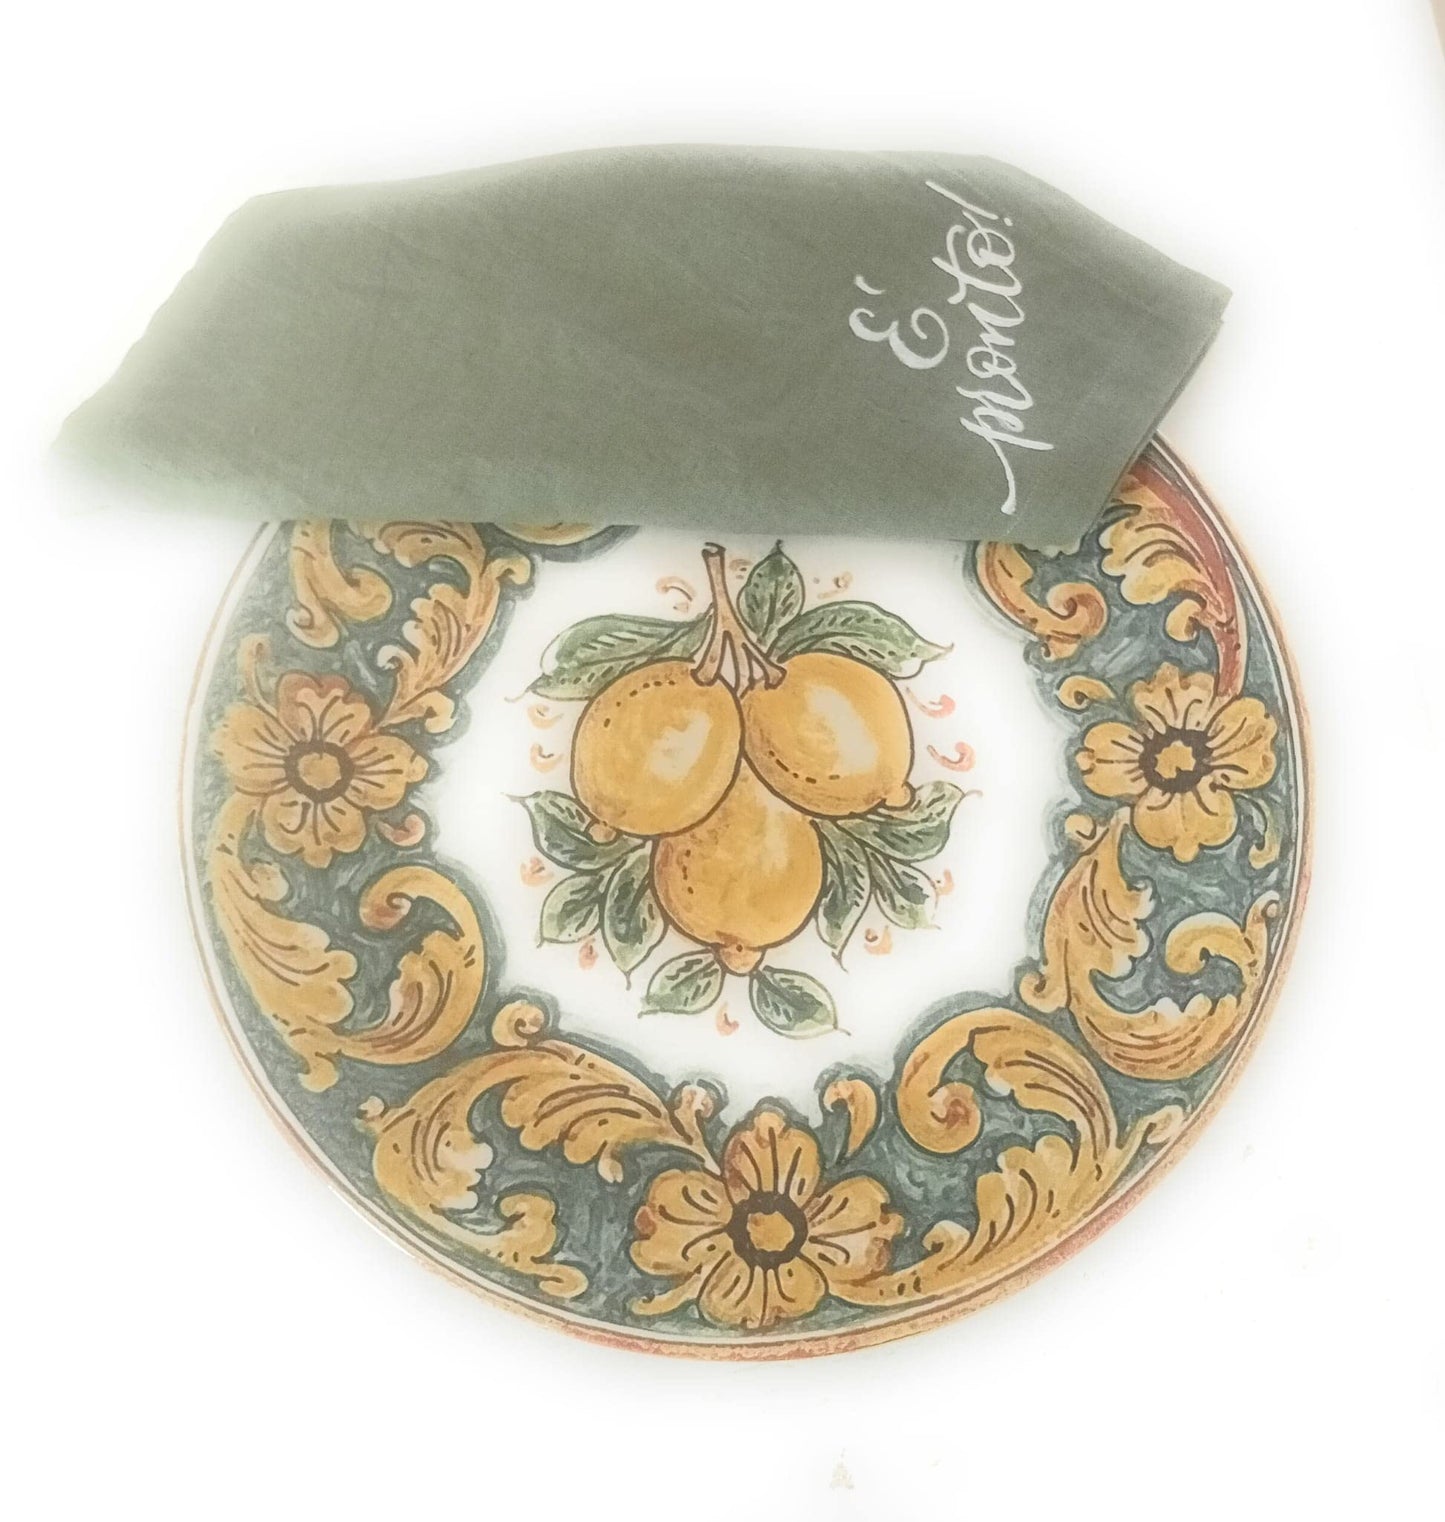 Porcelain dinner plates, handmade, Caltagirone lemons